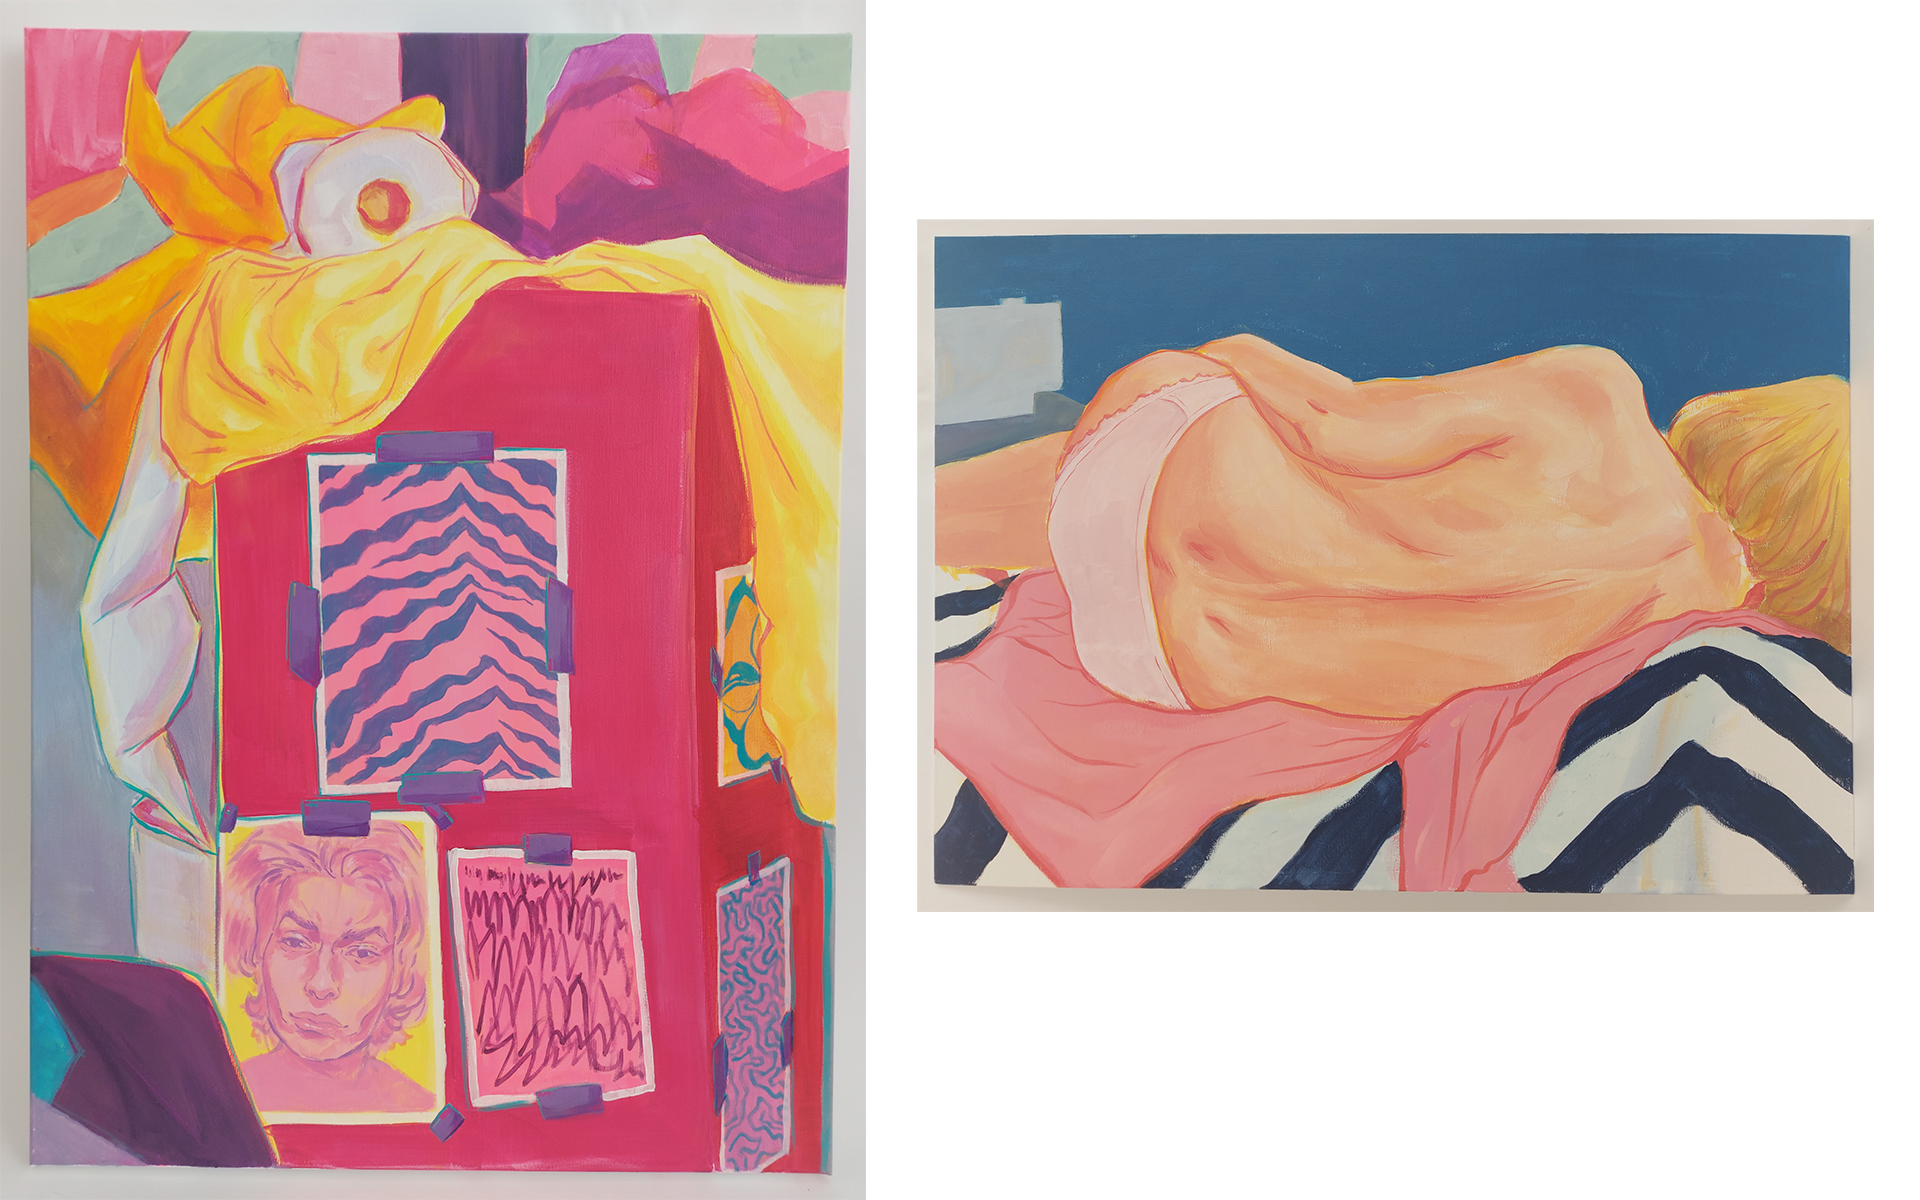 Grafika zawiera dwa obrazy: po lewej studium kolorowej martwej natury z autoportretem autorki, po prawej studium kobiety leżącej na różowym szlafroku w otoczeniu granatowych grubych pasów na materiale. 